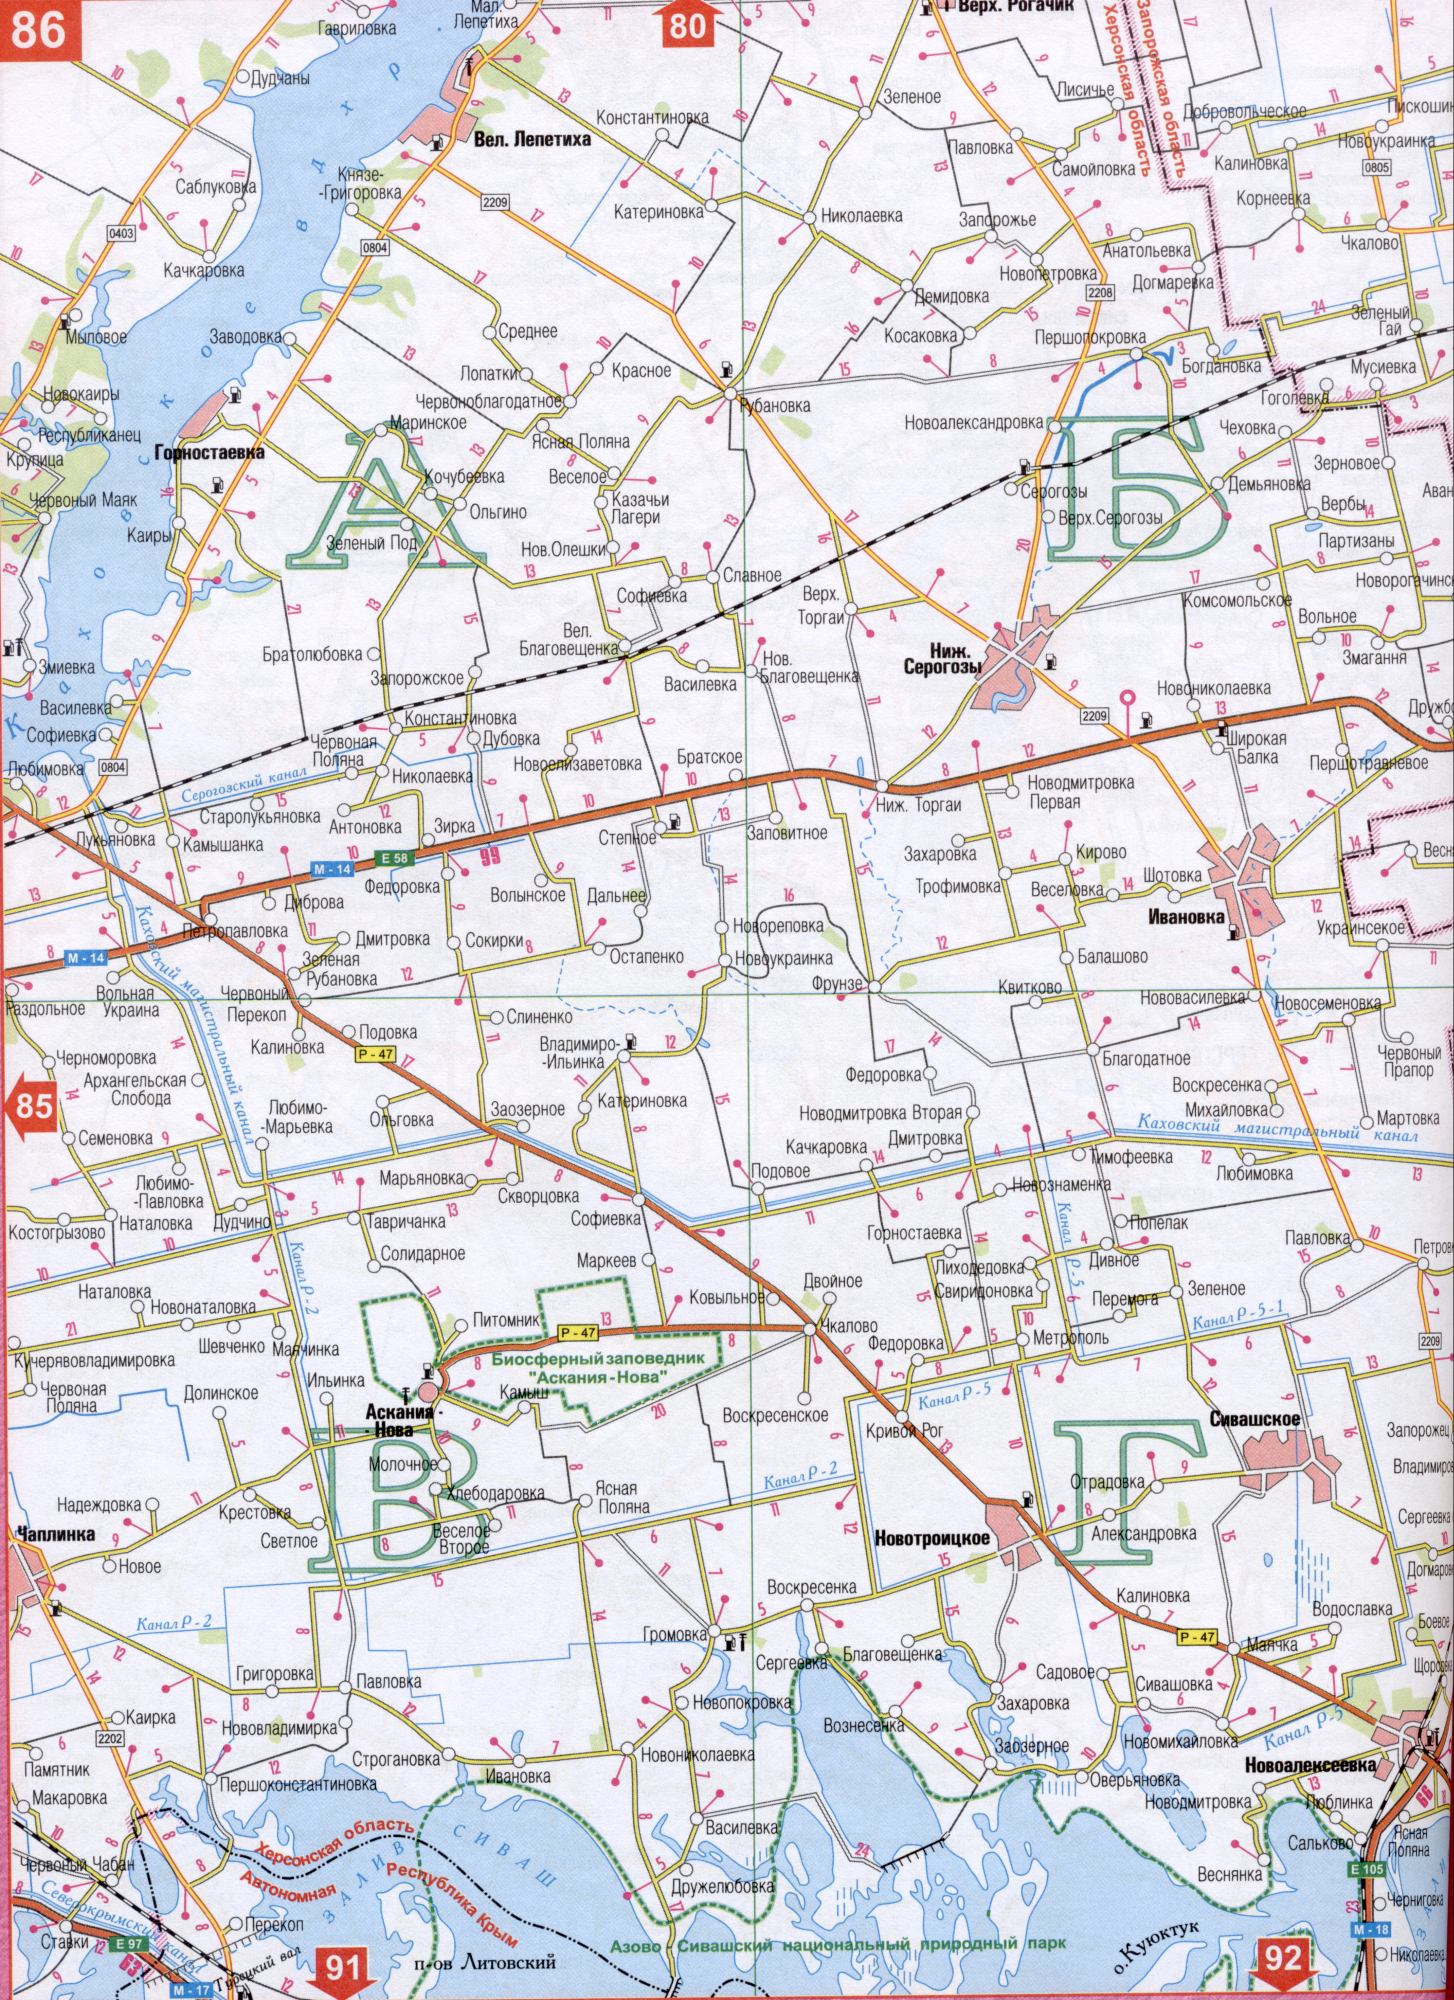 Карта Херсонської області Україна (обласний центр м.Херсон). Завантажити безкоштовно докладну карту автомобільних доріг, B0 - Каховський магістральний канал